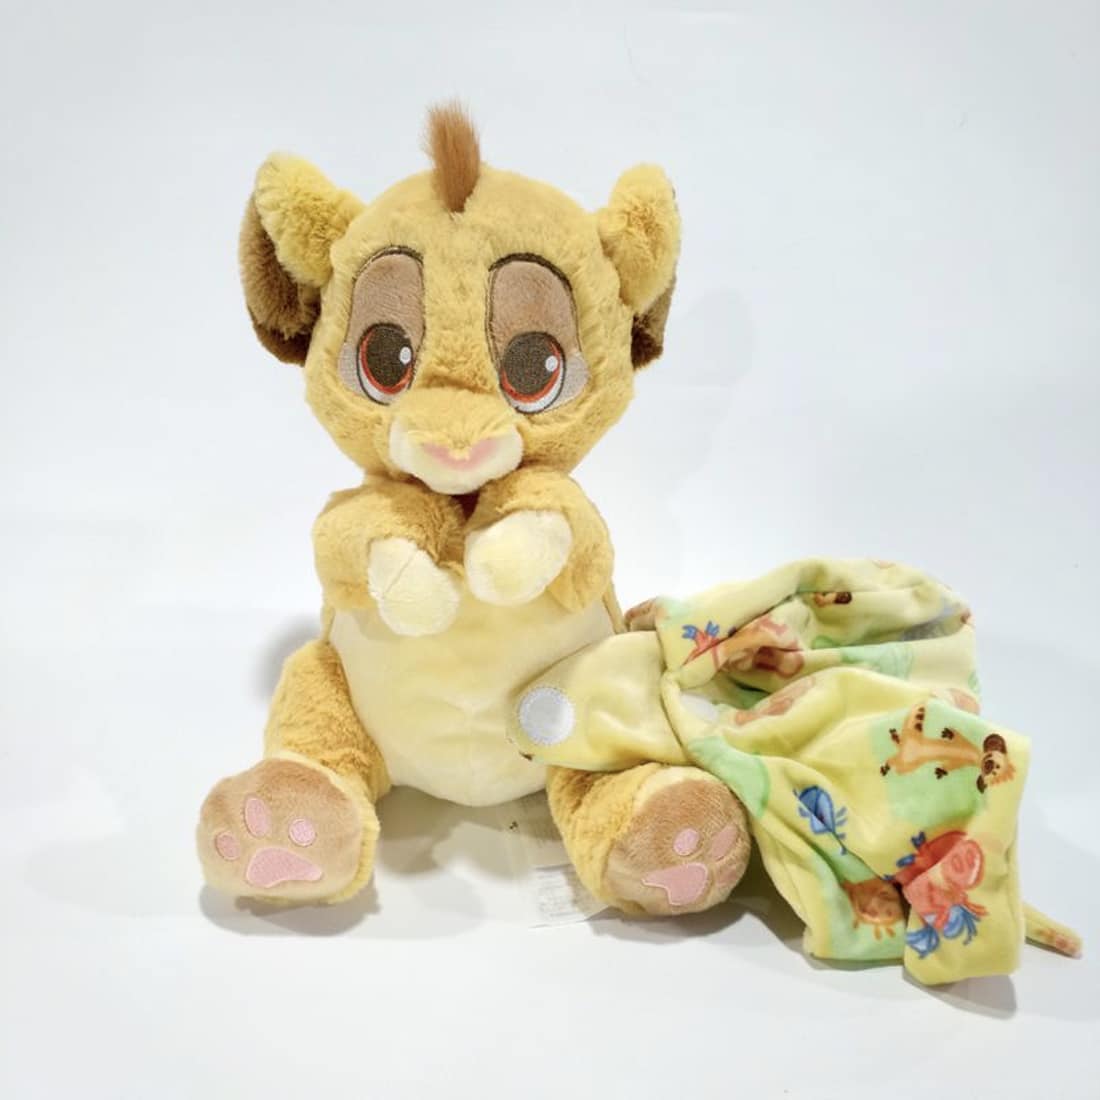 Simba Plüschtier in einer kleinen Decke Simba Plüschtier Disney Plüschtier König der Löwen Material: Baumwolle